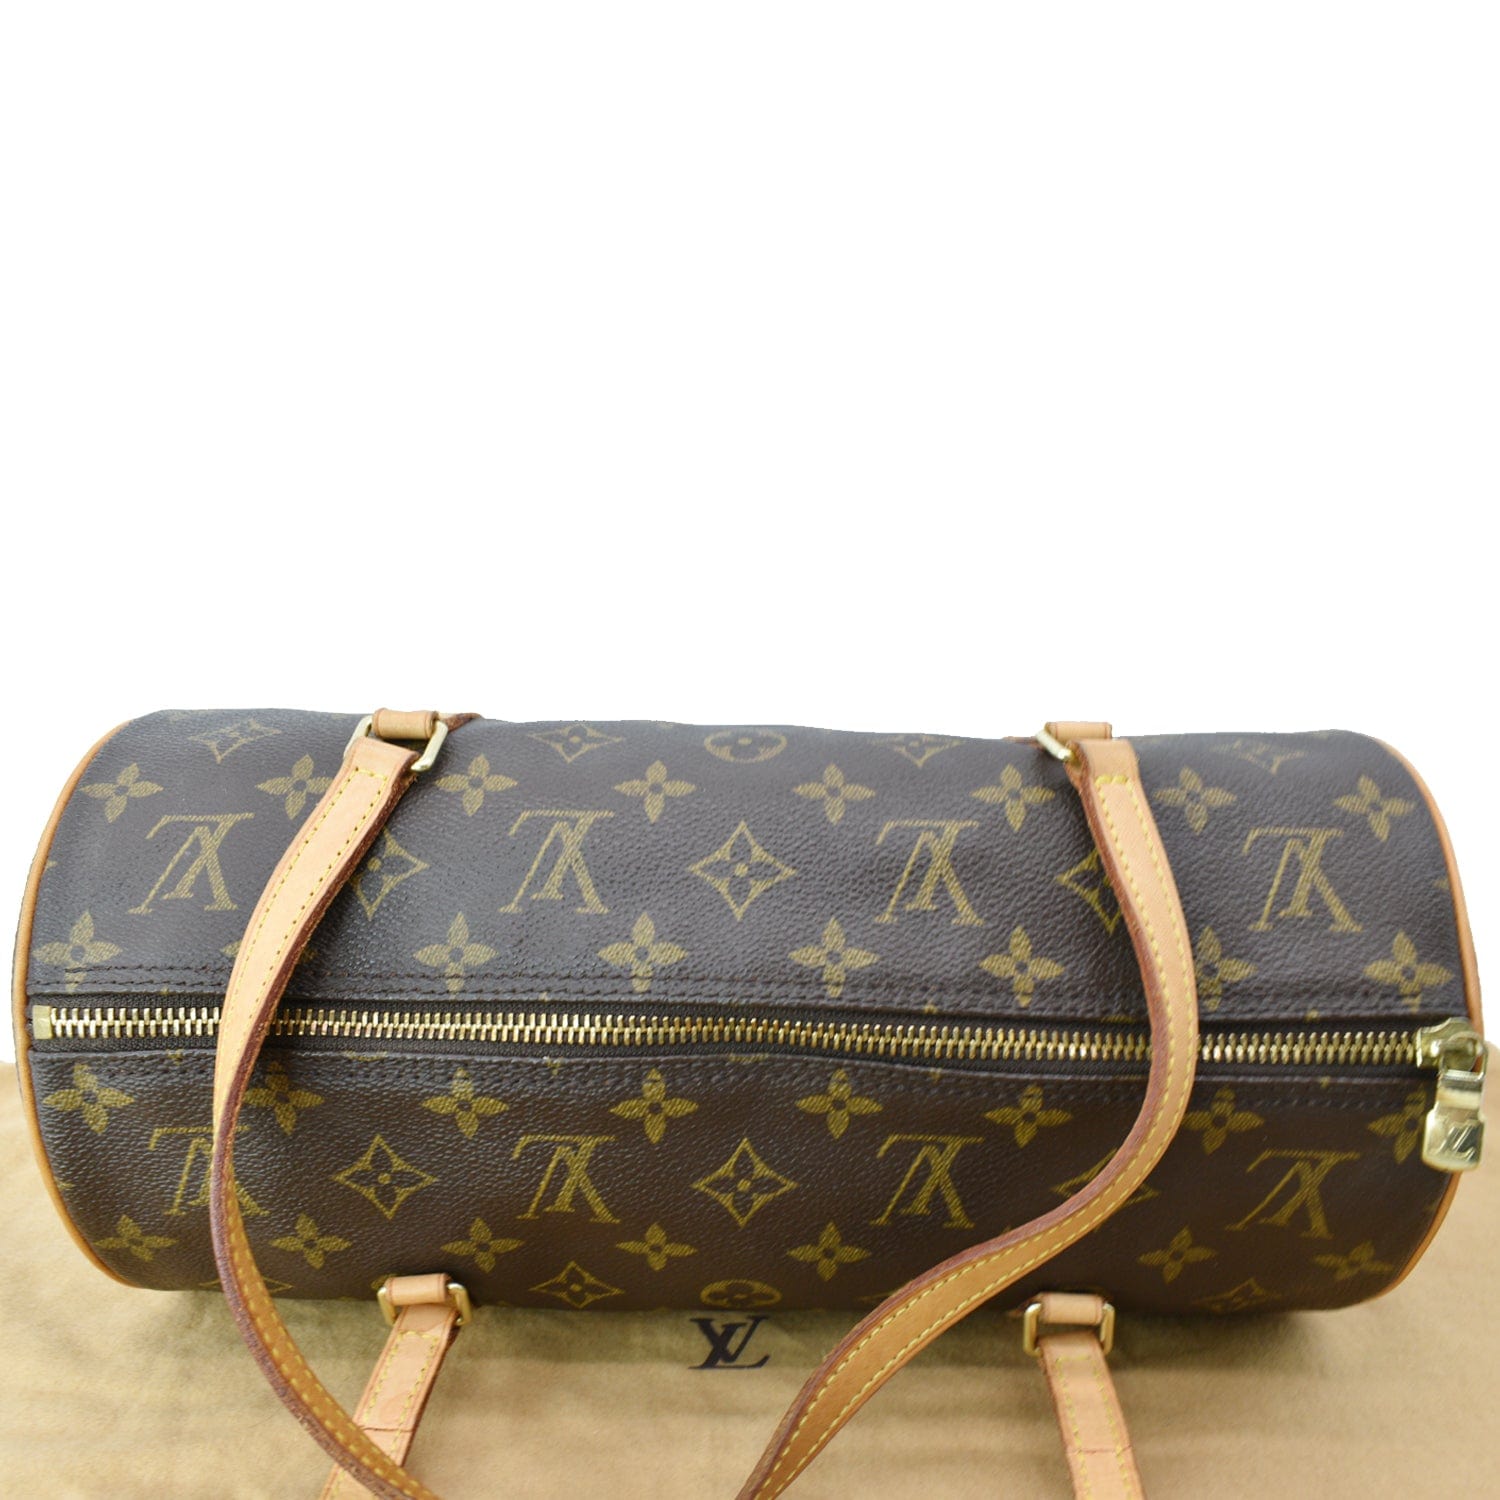 100% Authentic LOUIS VUITTON handbag